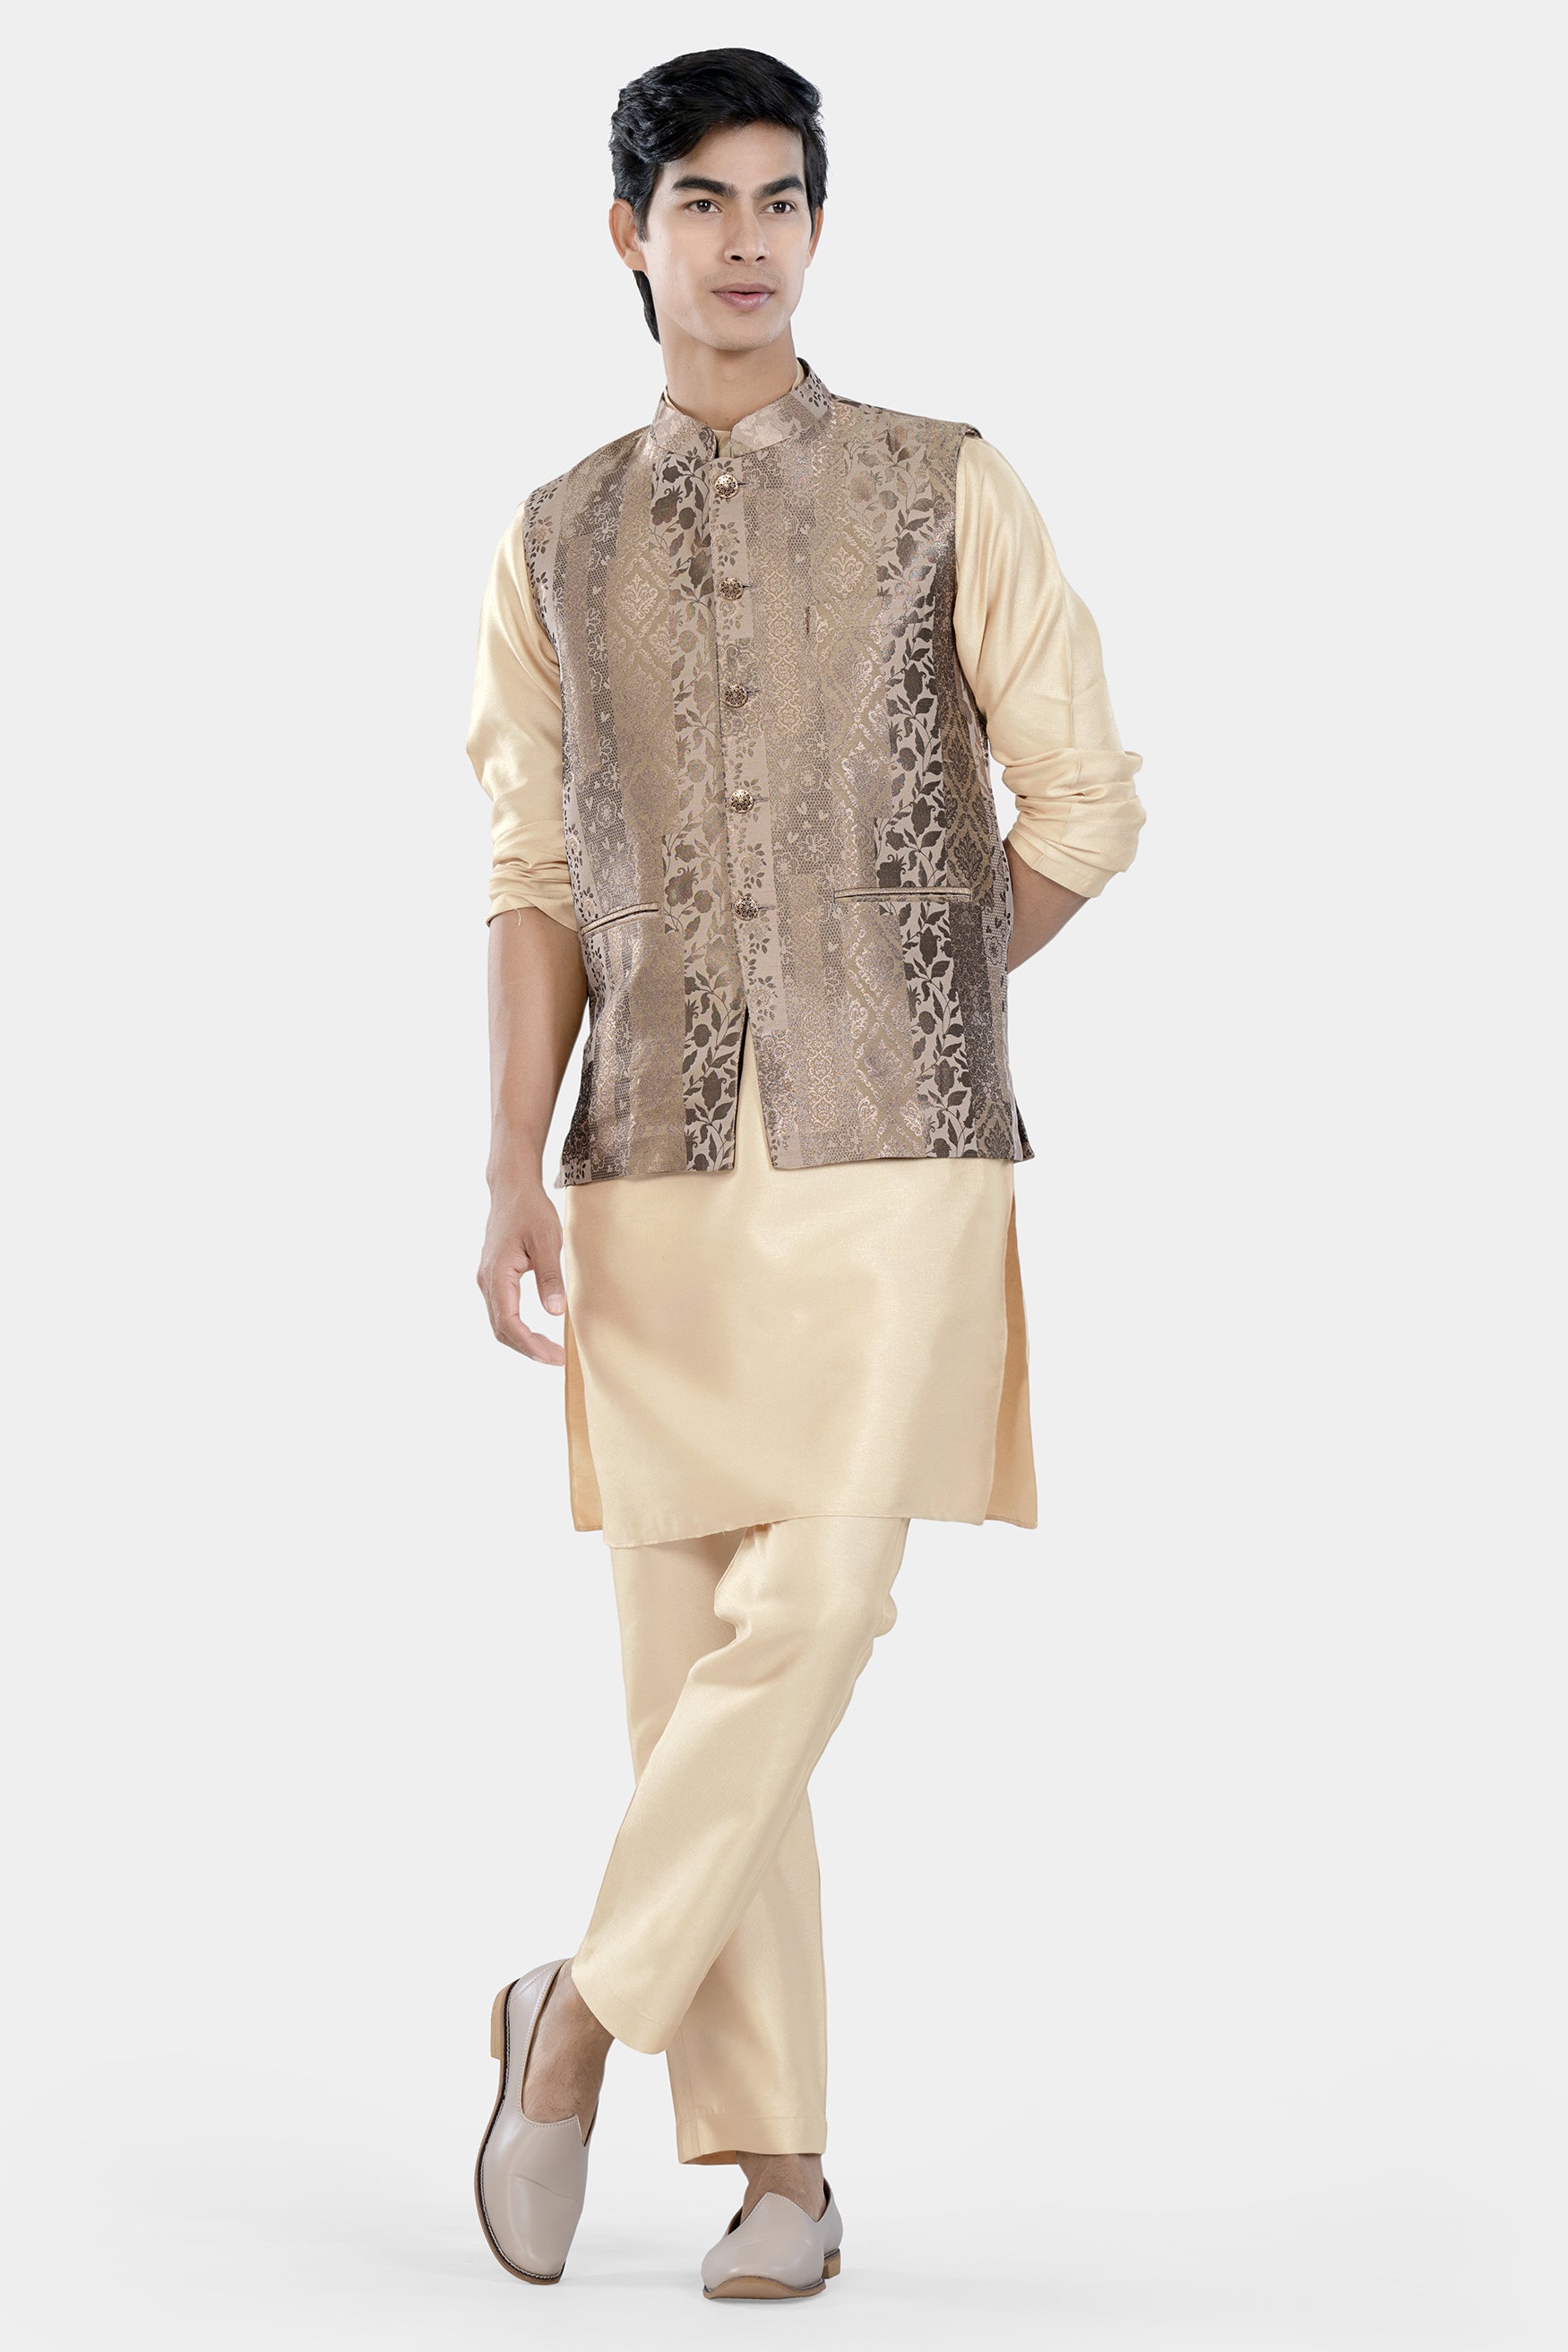 Cashmere and Sandrift Brown Floral Jacquard Textured Designer Nehru Jacket